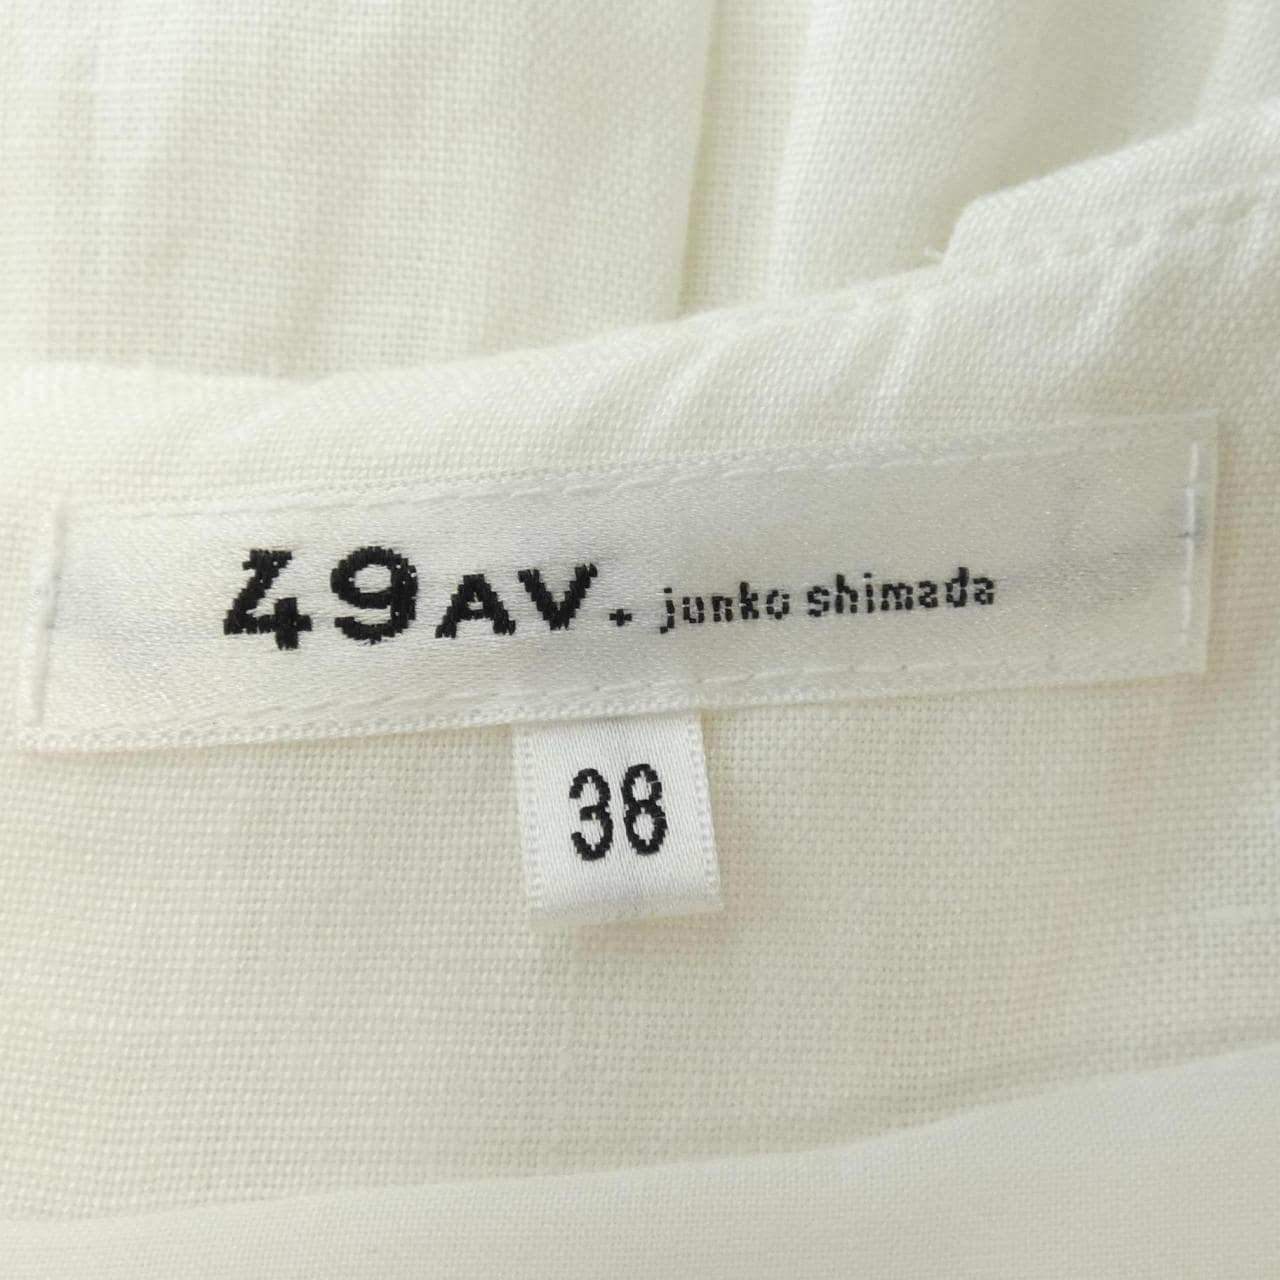 49 Avenue Junko Shimada 49AV.junko shimada裙子